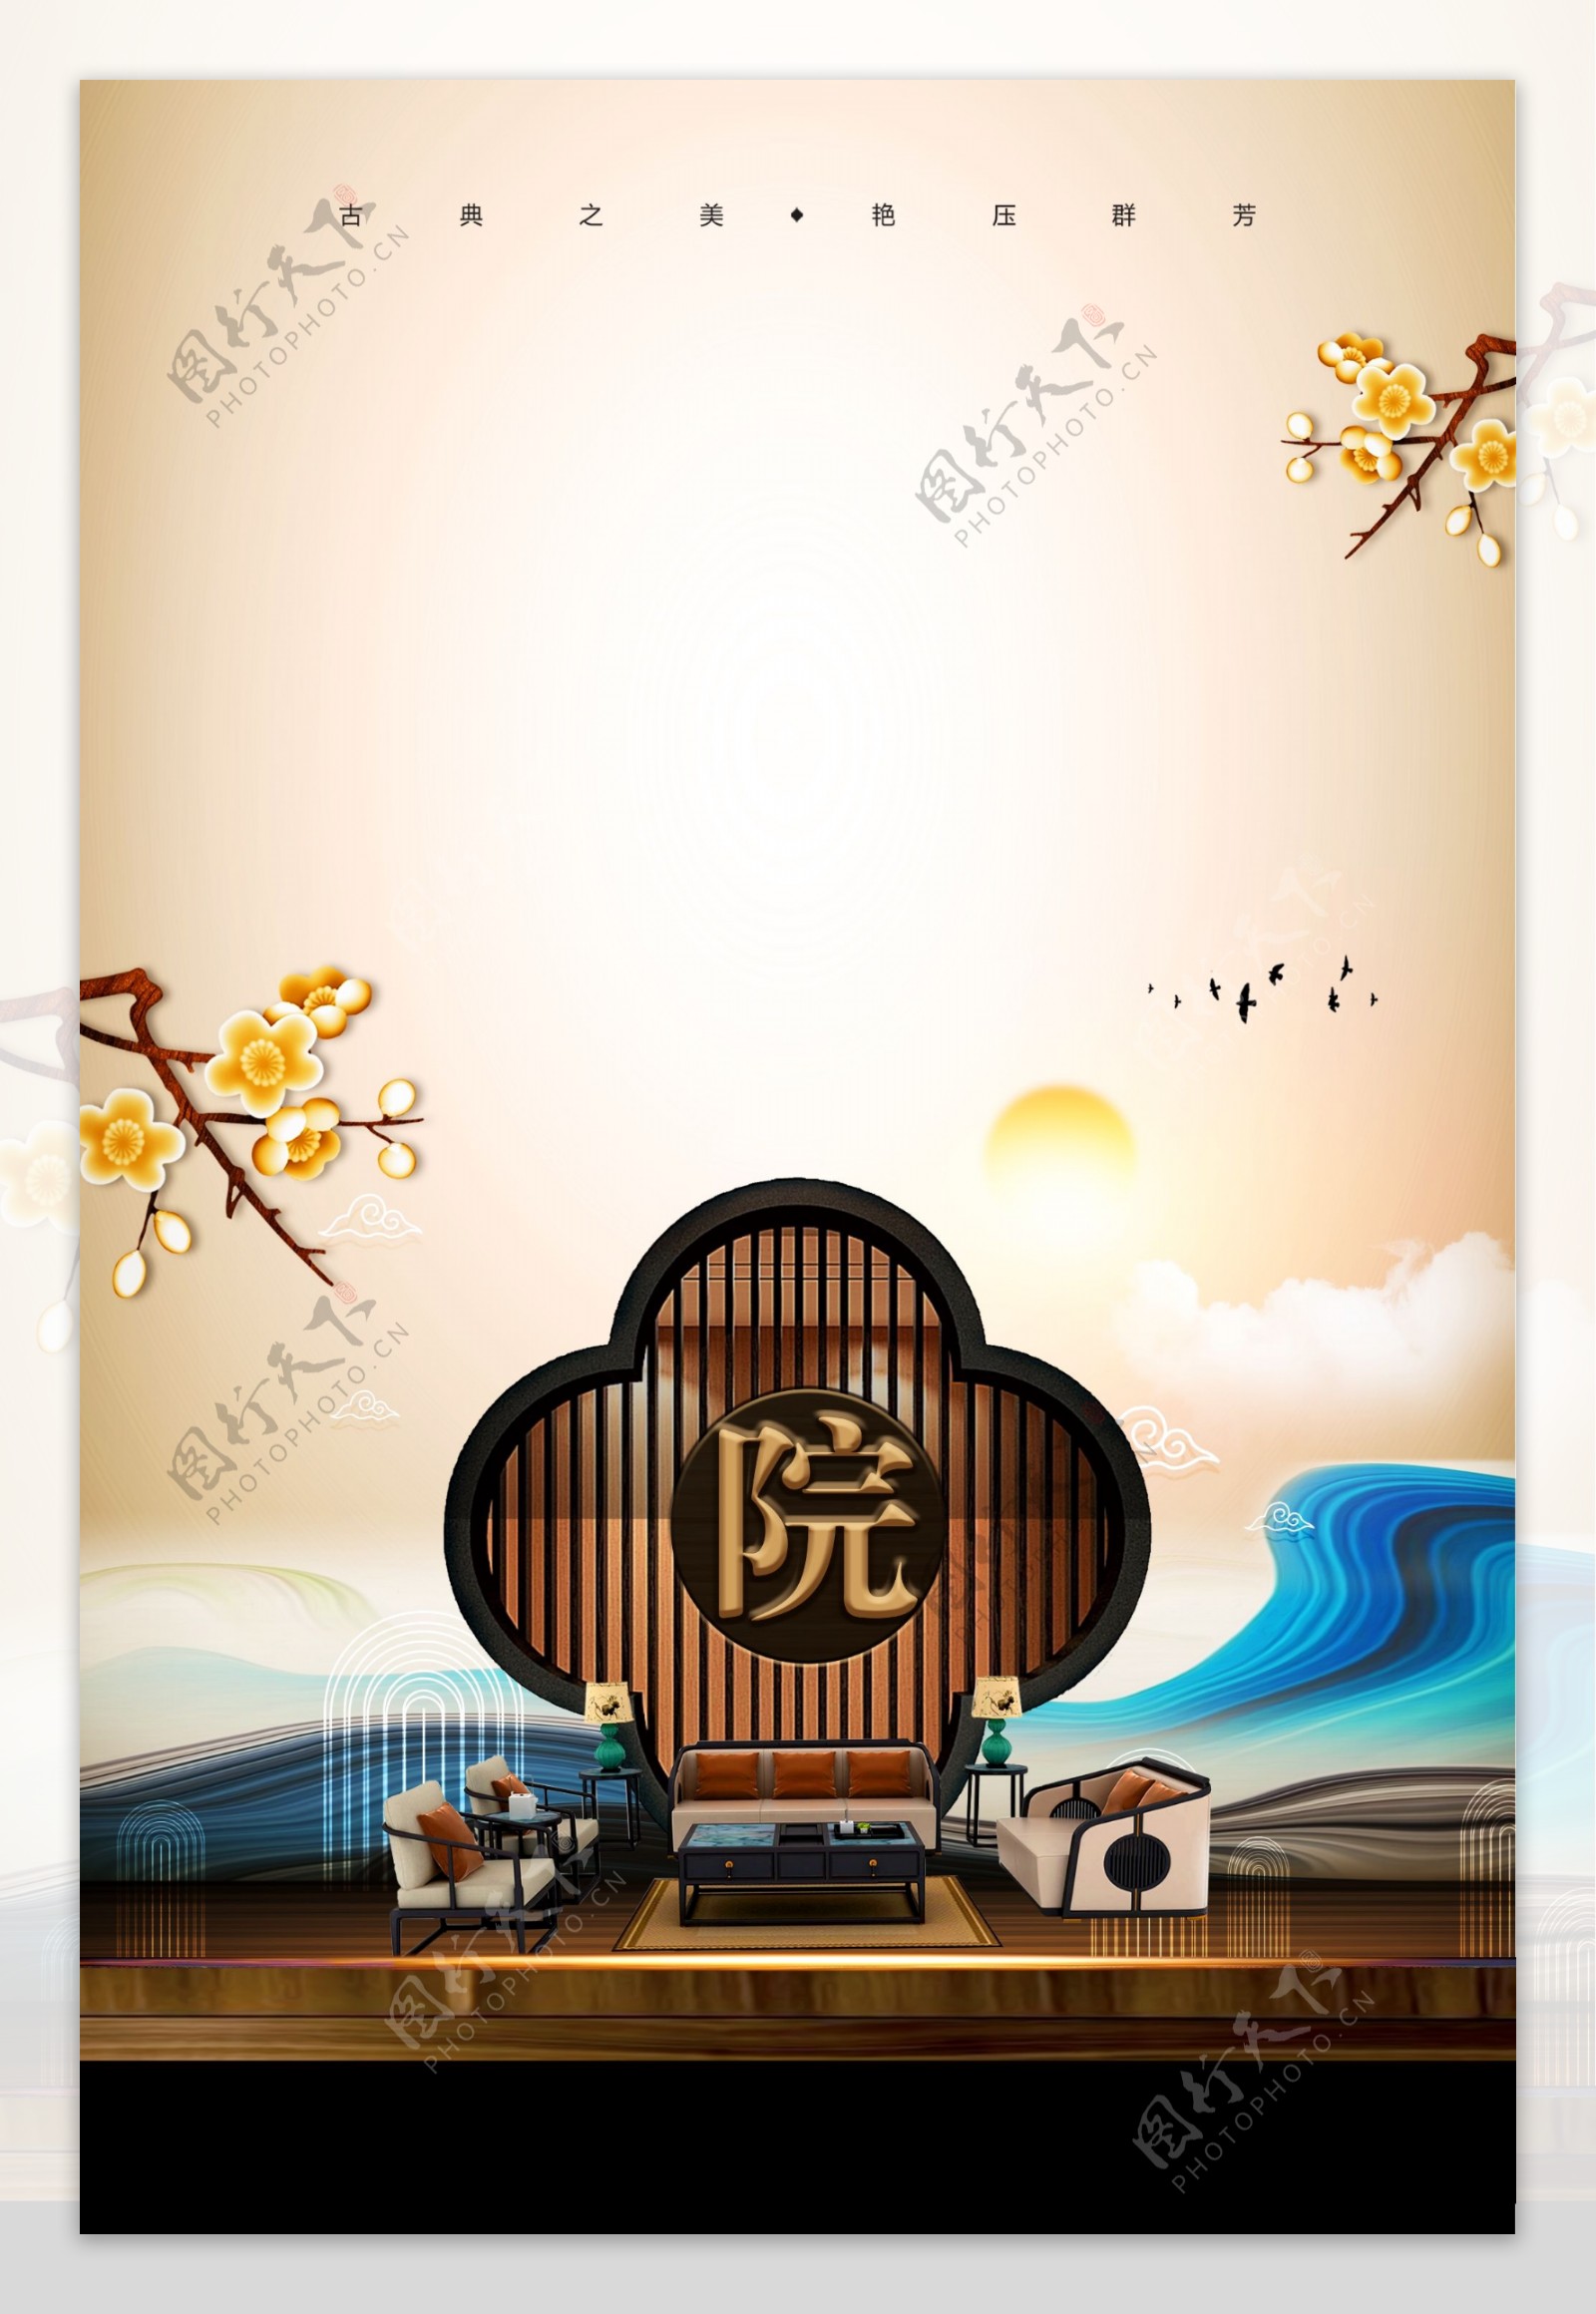 中国风古典院墅房地产海报背景设计